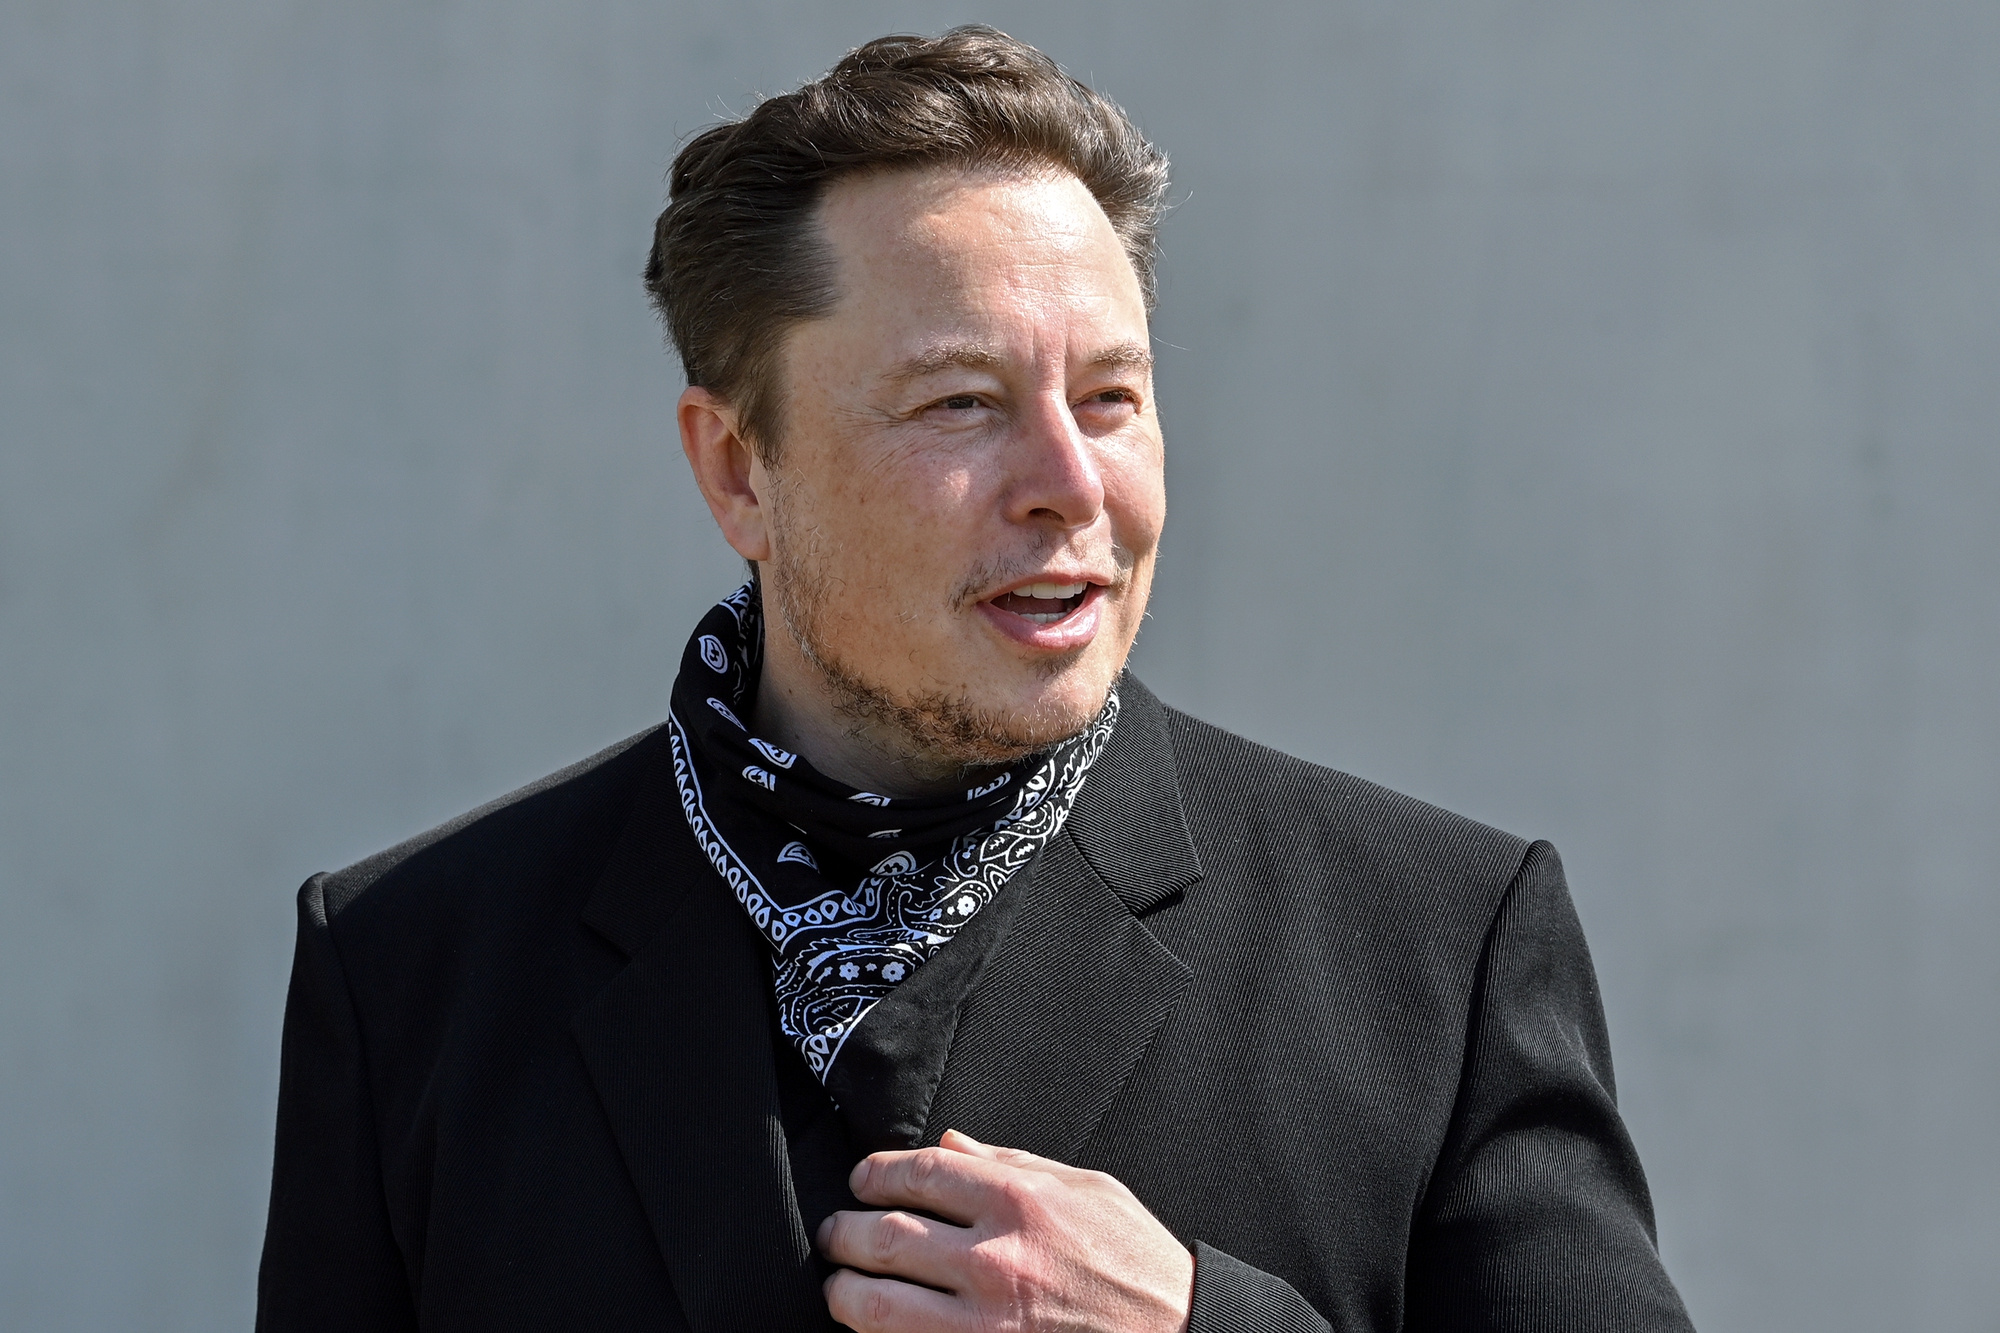 Chân dung quản gia bí ẩn đứng sau Elon Musk: Người quản lý phần lớn tiền của tỷ phú Tesla, lặng lẽ đứng sau ánh hào quang của truyền thông - Ảnh 3.